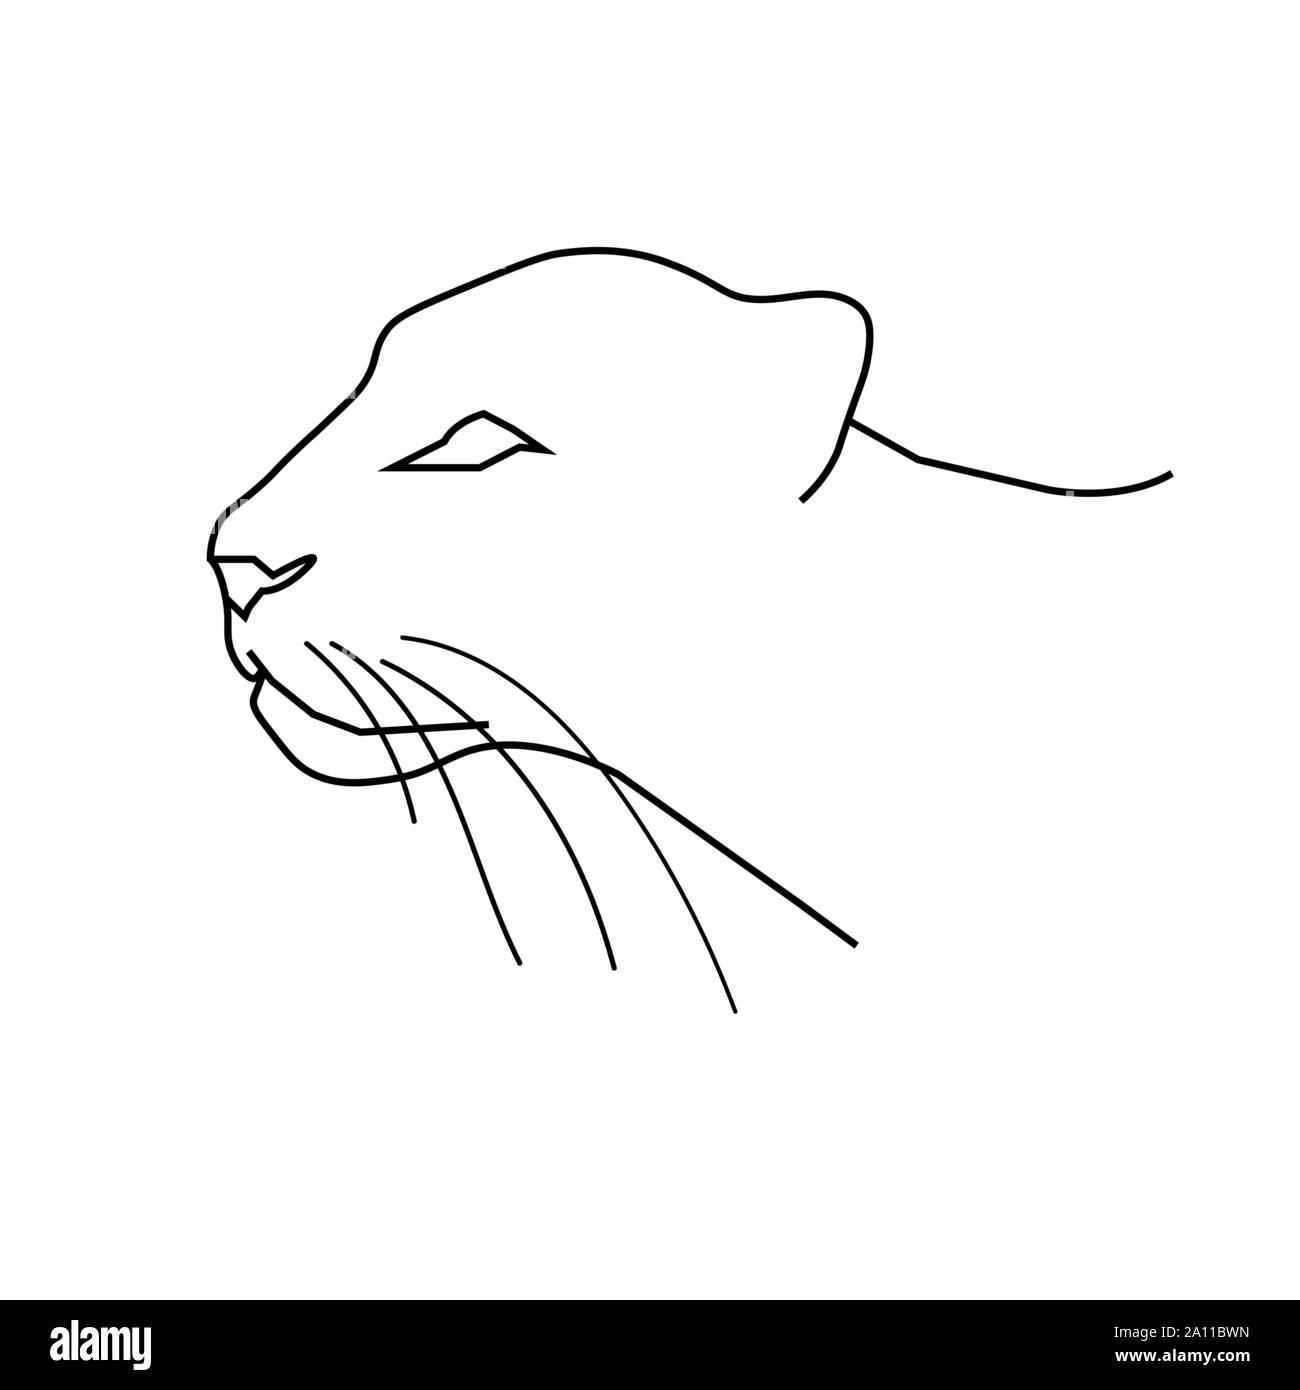 Panther o leopard alla testa. Line art doodle sketch. Contorno nero su sfondo bianco. Sfondo può essere utilizzato in biglietti di auguri, poster, volantini, banner, loghi ecc. Illustrazione Vettoriale. EPS10 Illustrazione Vettoriale